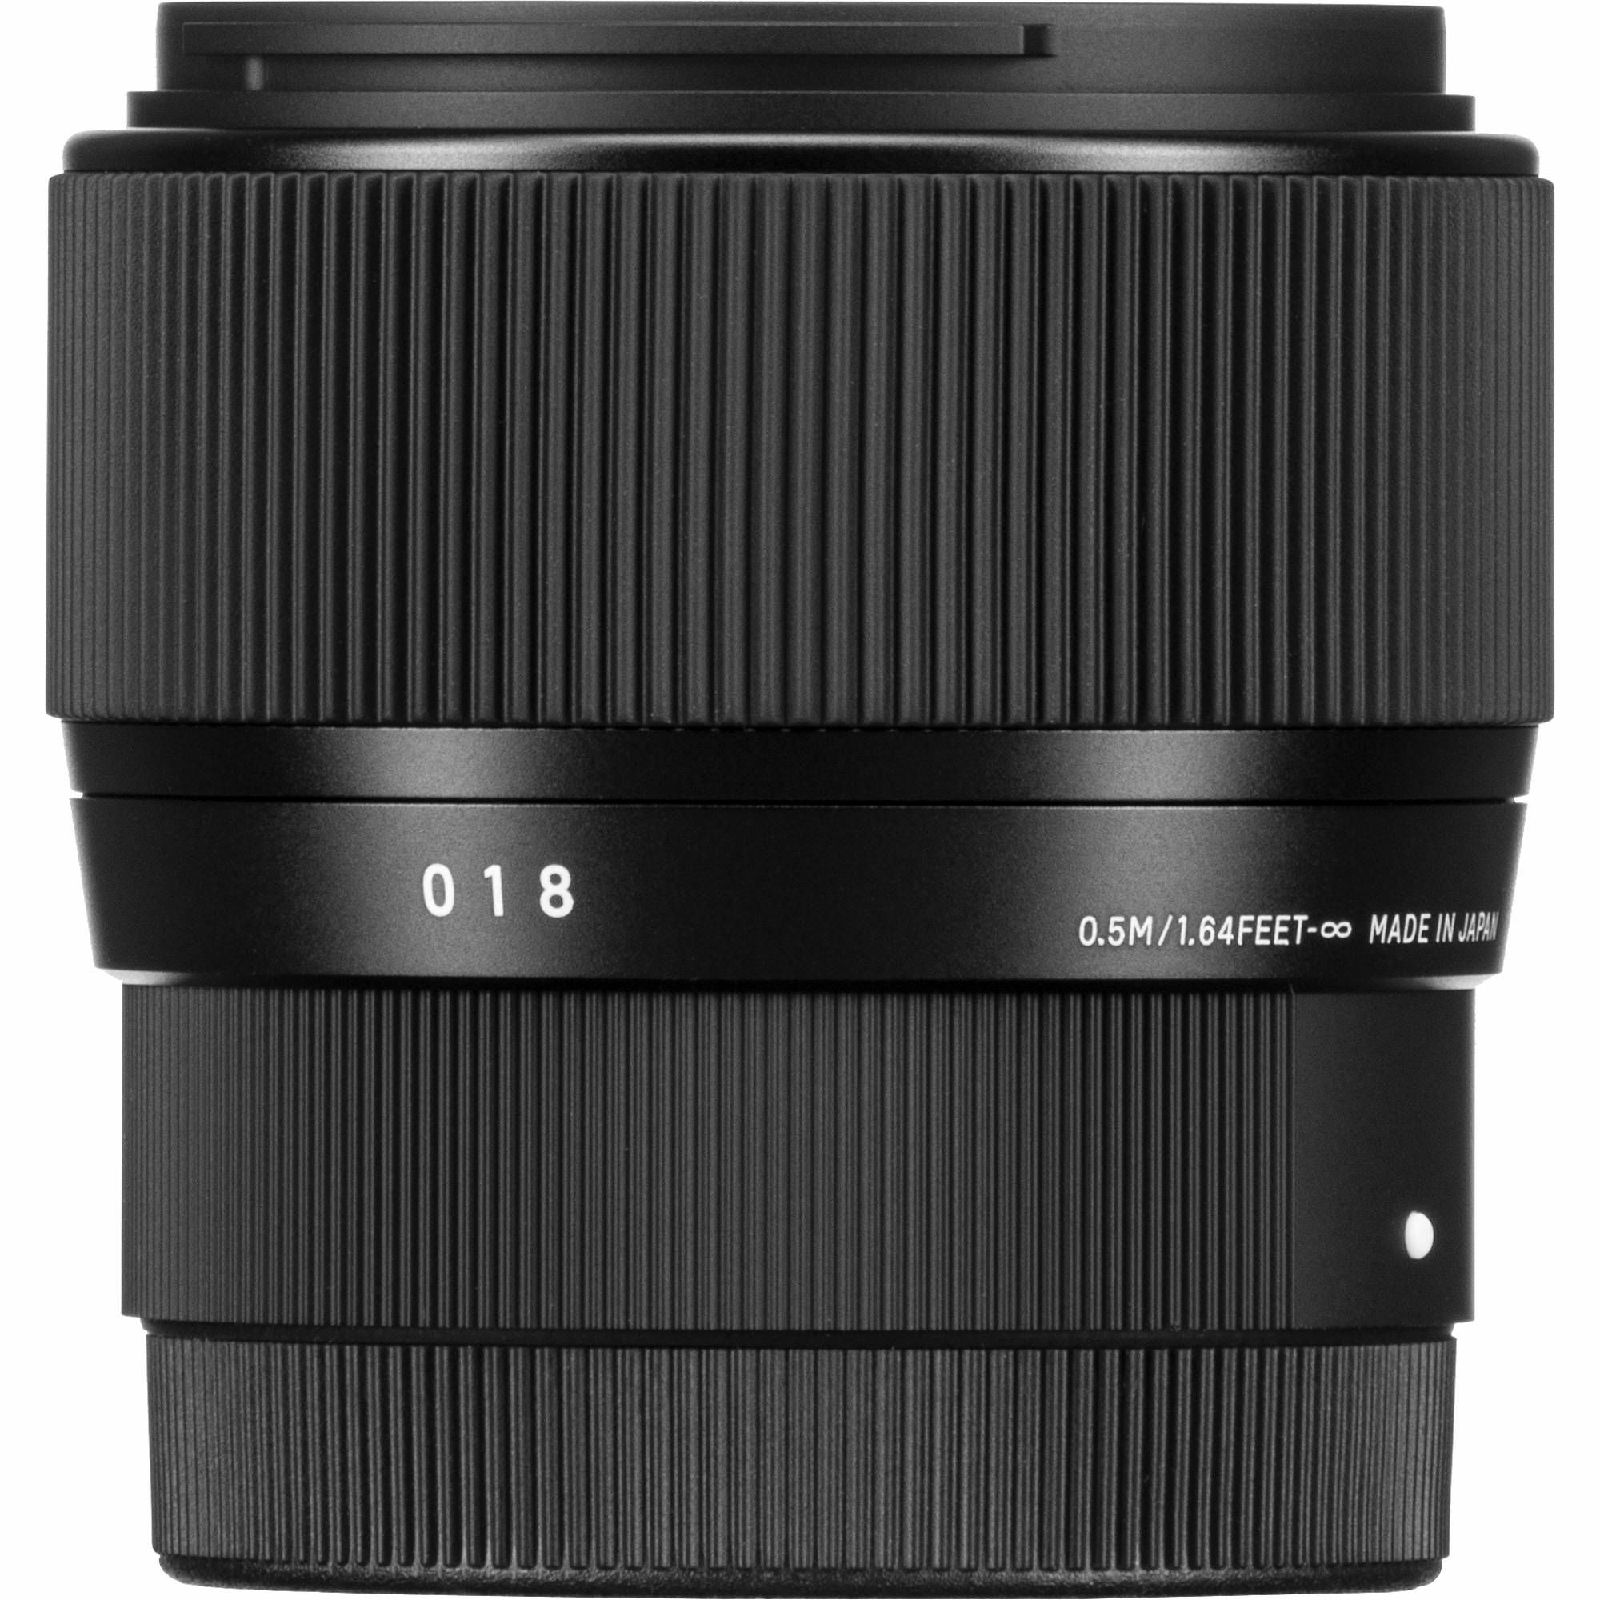 Sigma 56mm f/1.4 DC DN Contemporary objektiv za Canon EF-M